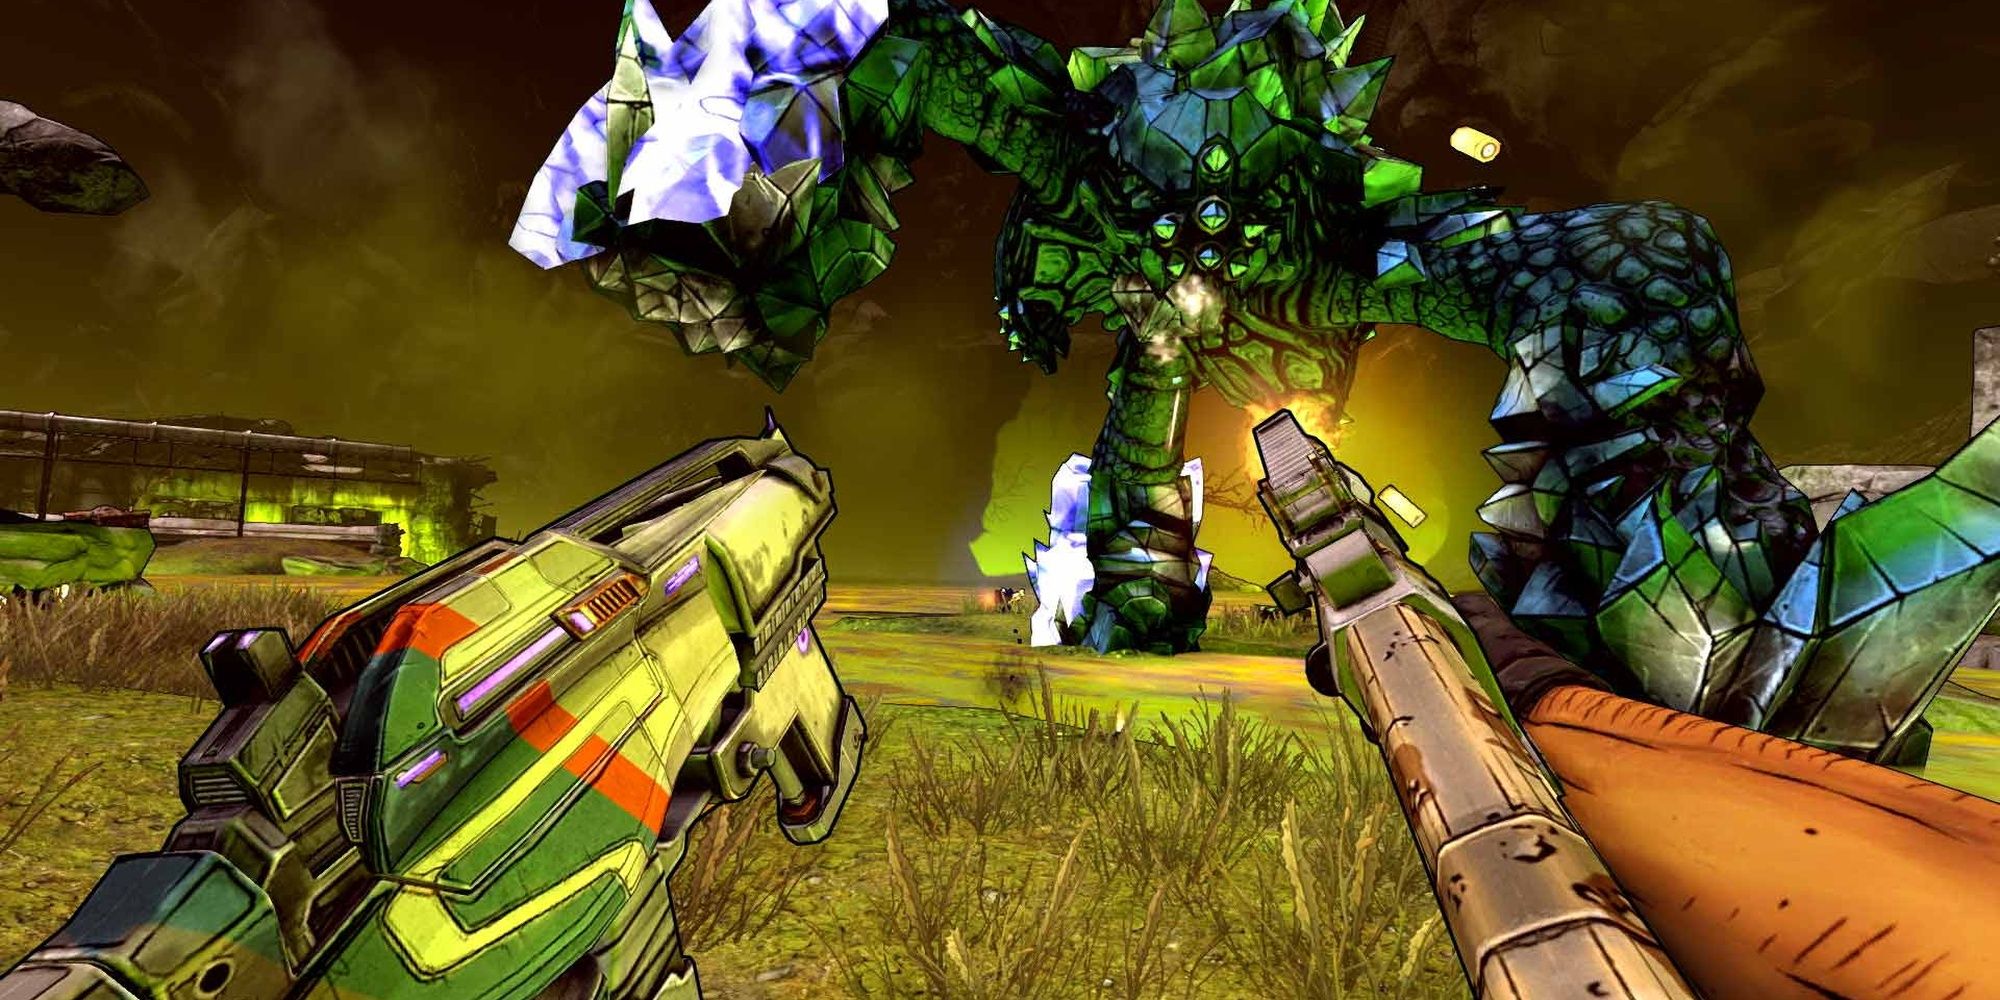 Borderlands 2 VR: Dual Wielding Guns During A Monster Fight